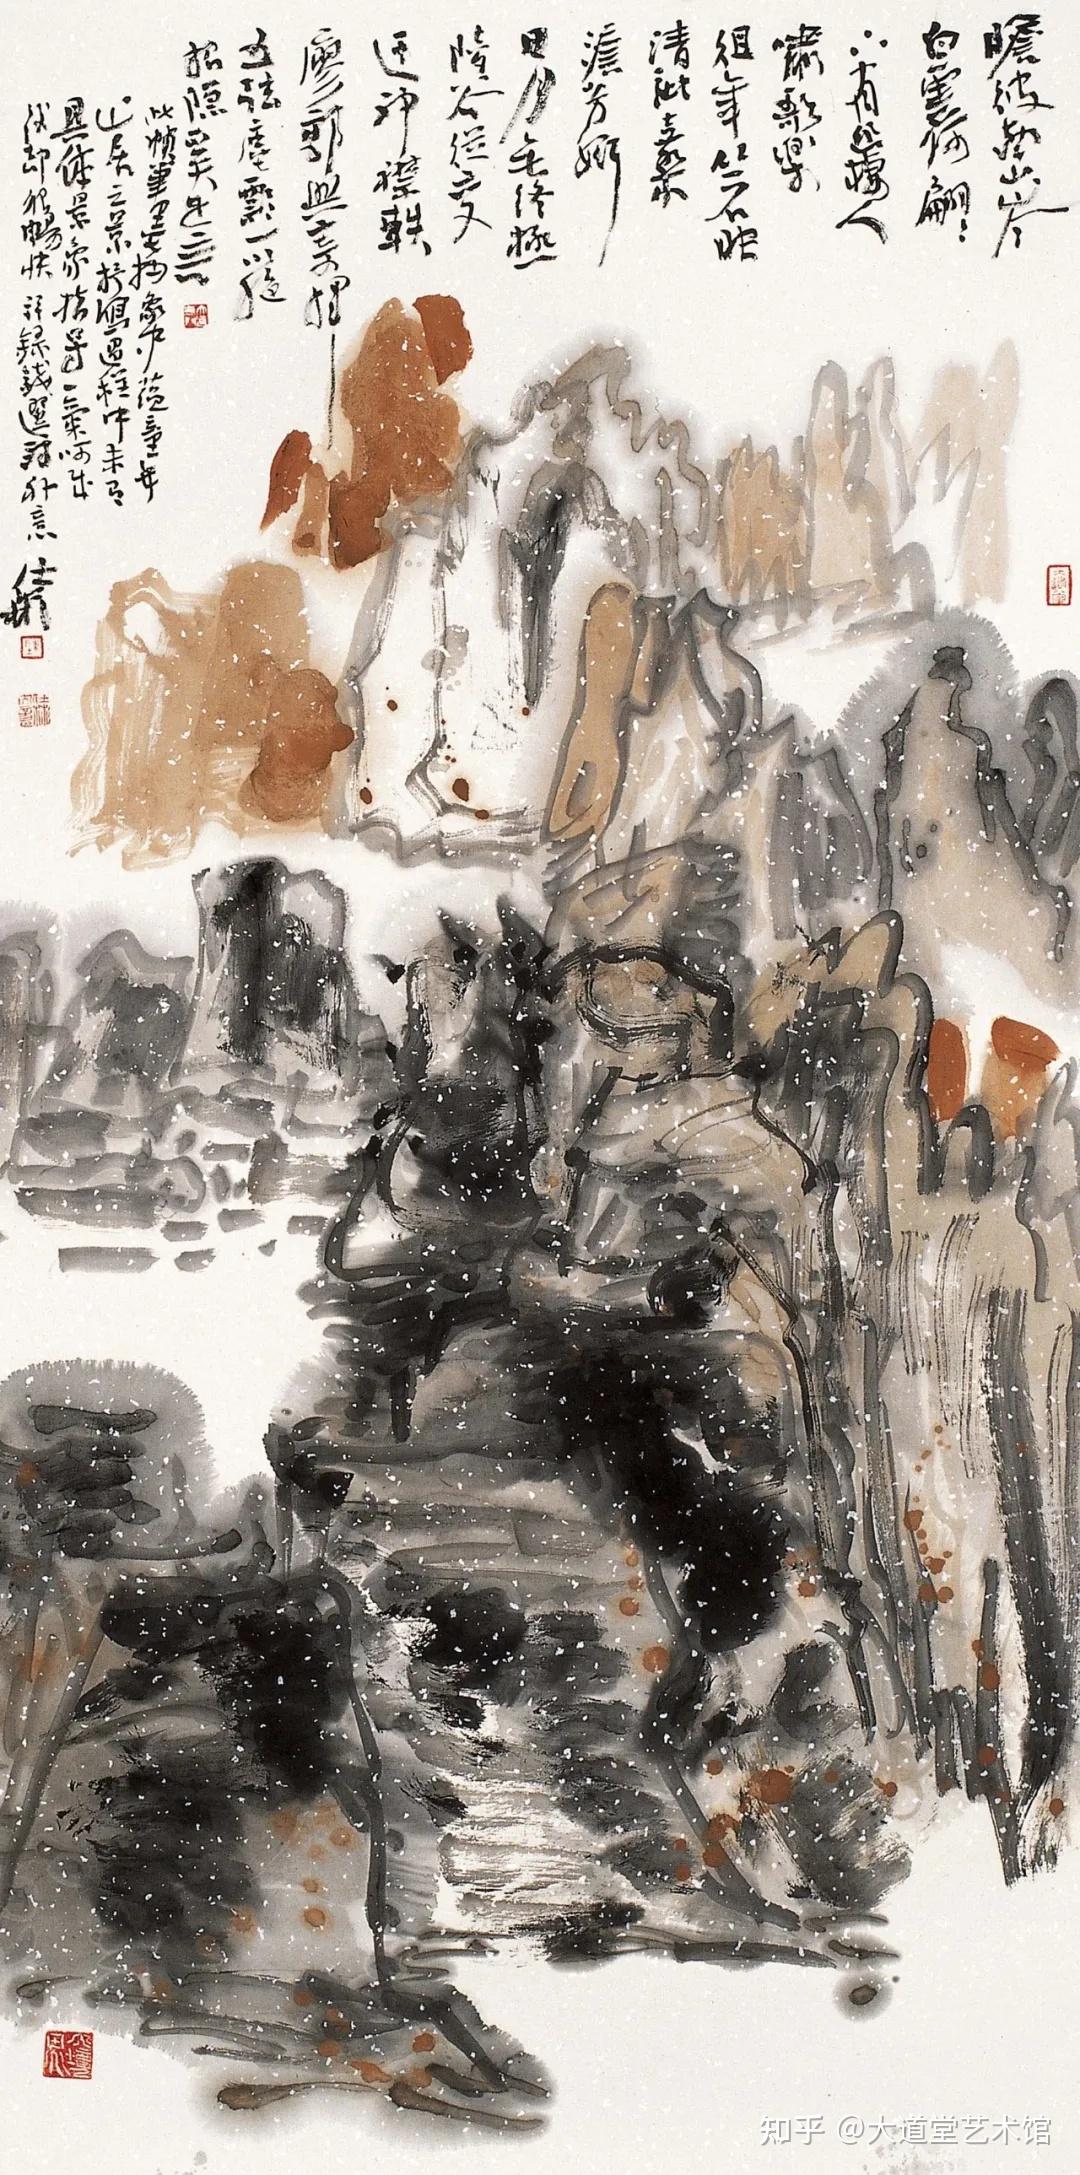 画家是做美育的先行者陈仕彬先生艺术观点六十八